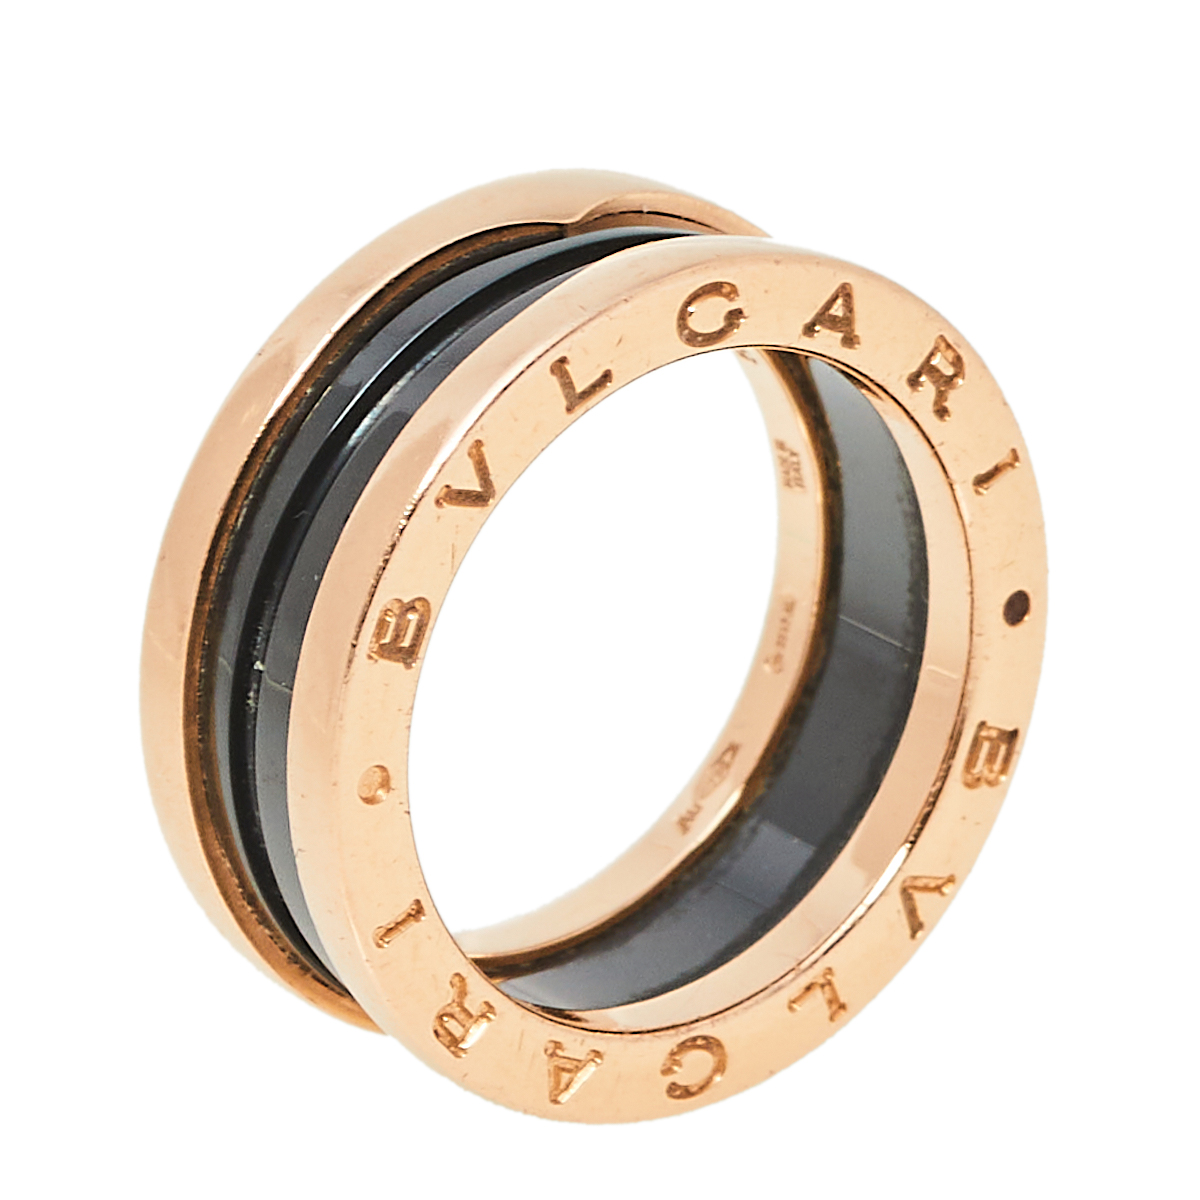 Bvlgari B.Zero1 18K Rose Gold & Black Ceramic Two-Band Ring Size 54